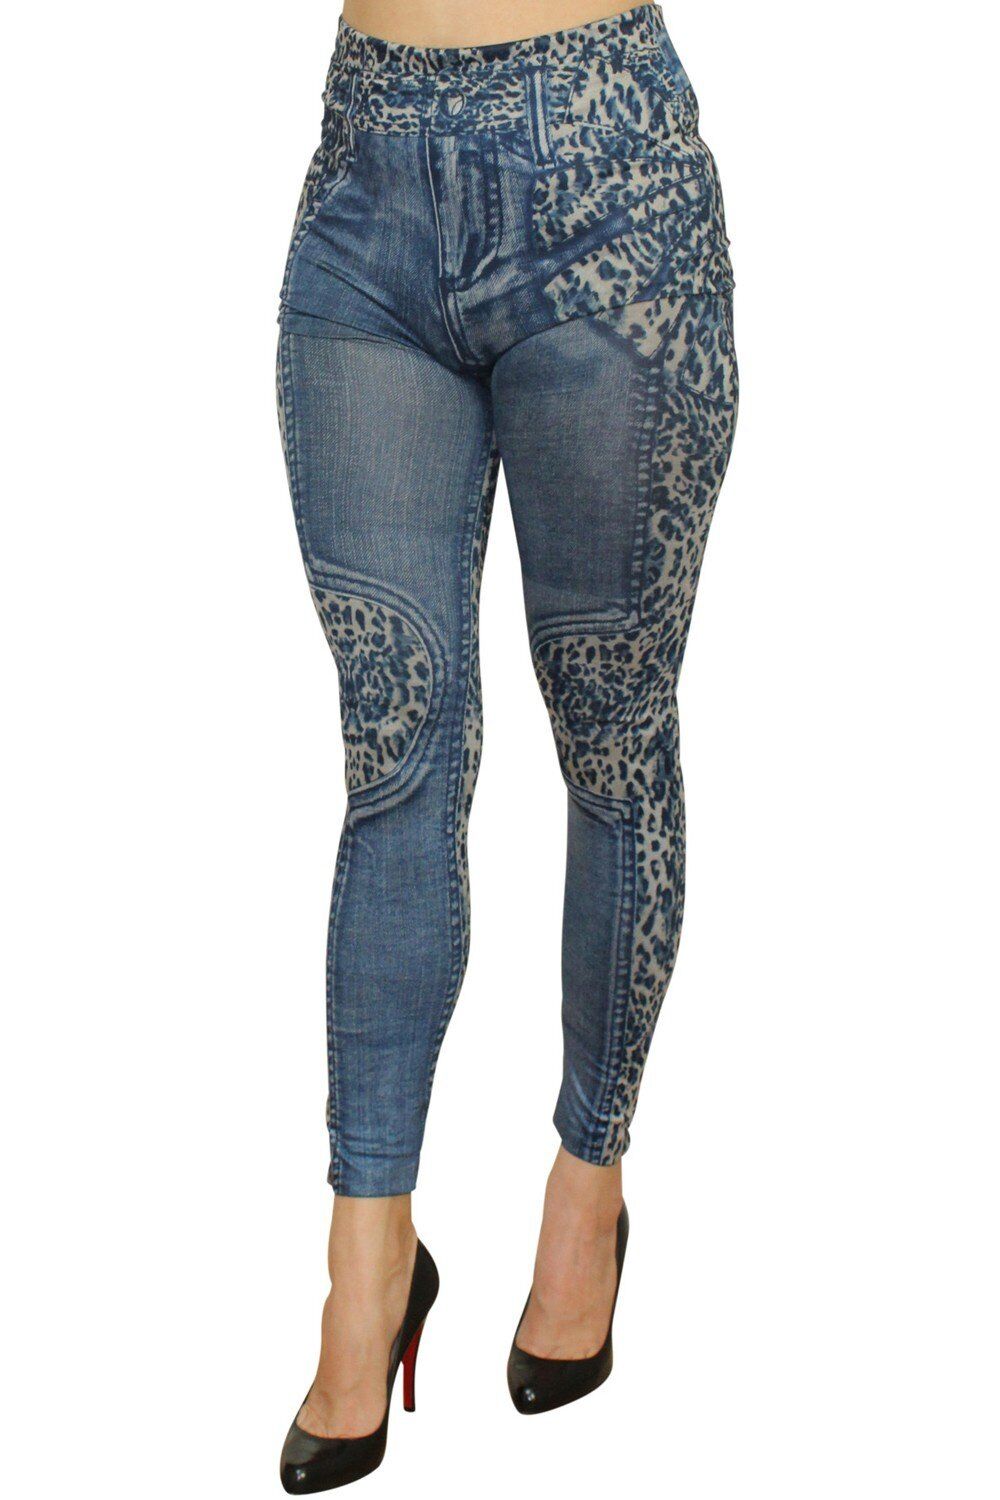 Fashion Diffusion Legging bleu effet jean délavé imprimé léopard Bleu